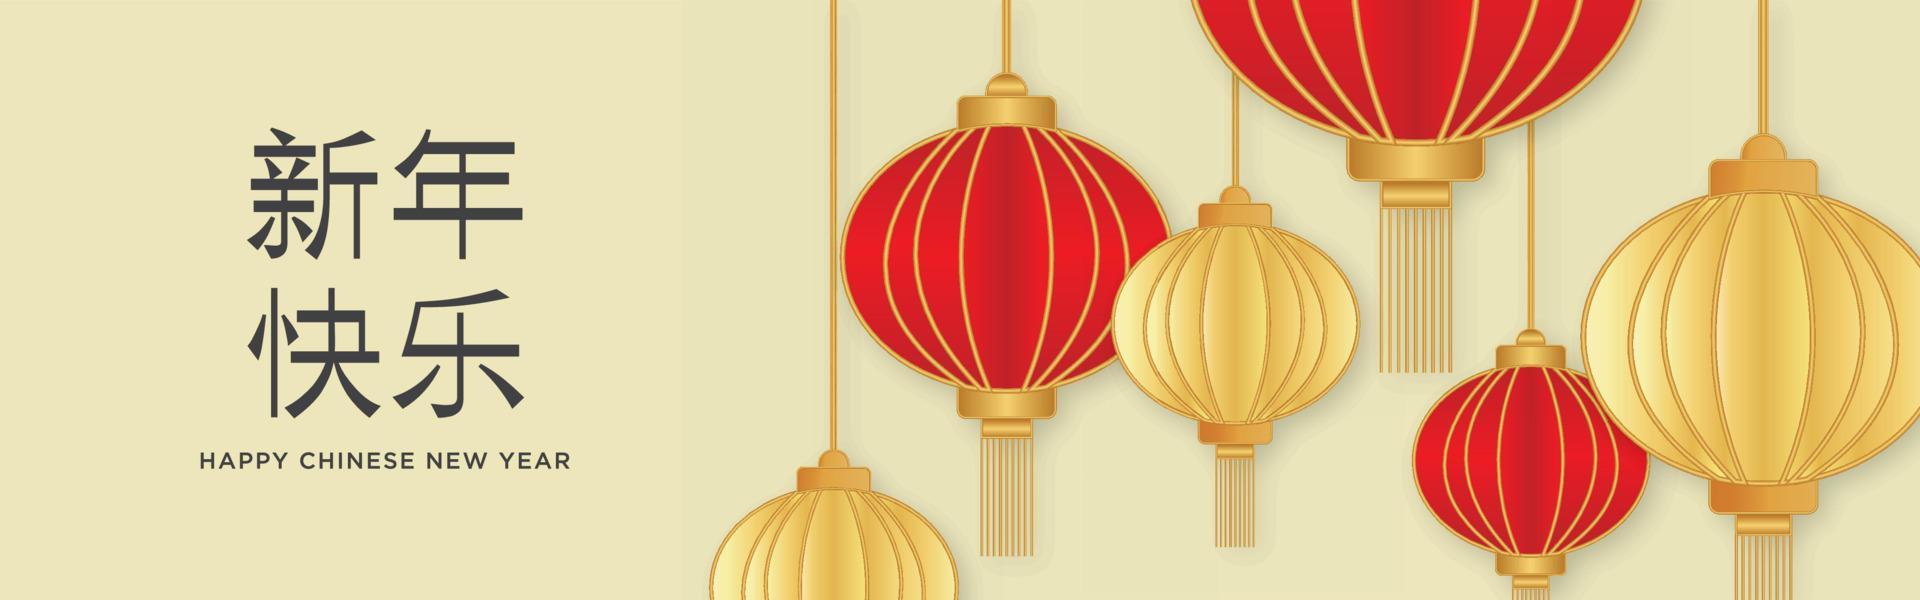 bannière horizontale joyeux nouvel an chinois vecteur